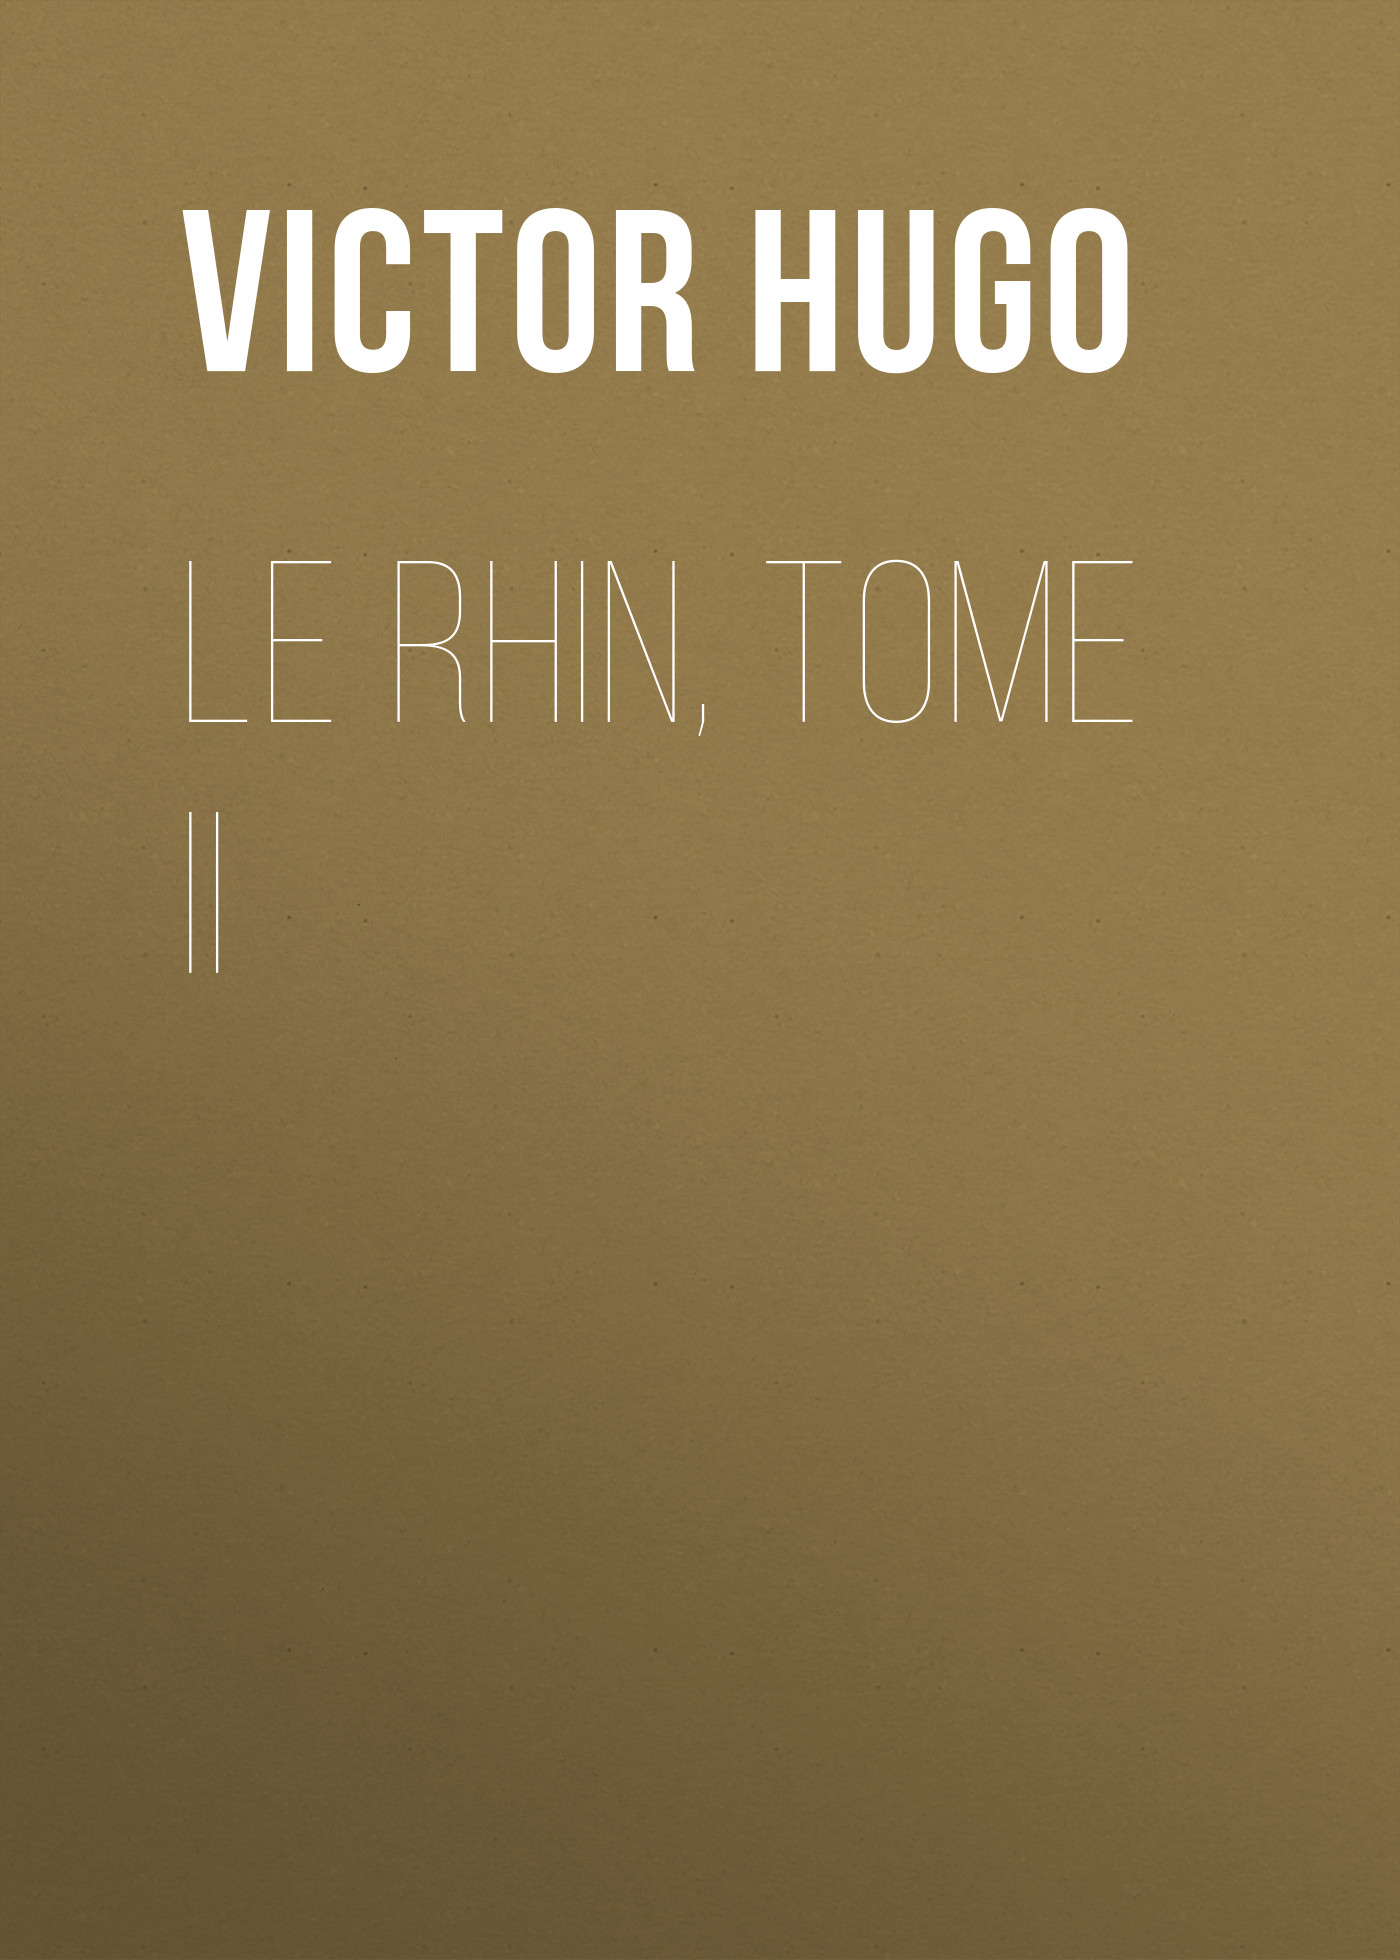 Книга Le Rhin, Tome II из серии , созданная Victor Hugo, может относится к жанру Литература 19 века, Зарубежная старинная литература, Зарубежная классика. Стоимость электронной книги Le Rhin, Tome II с идентификатором 25230292 составляет 0 руб.